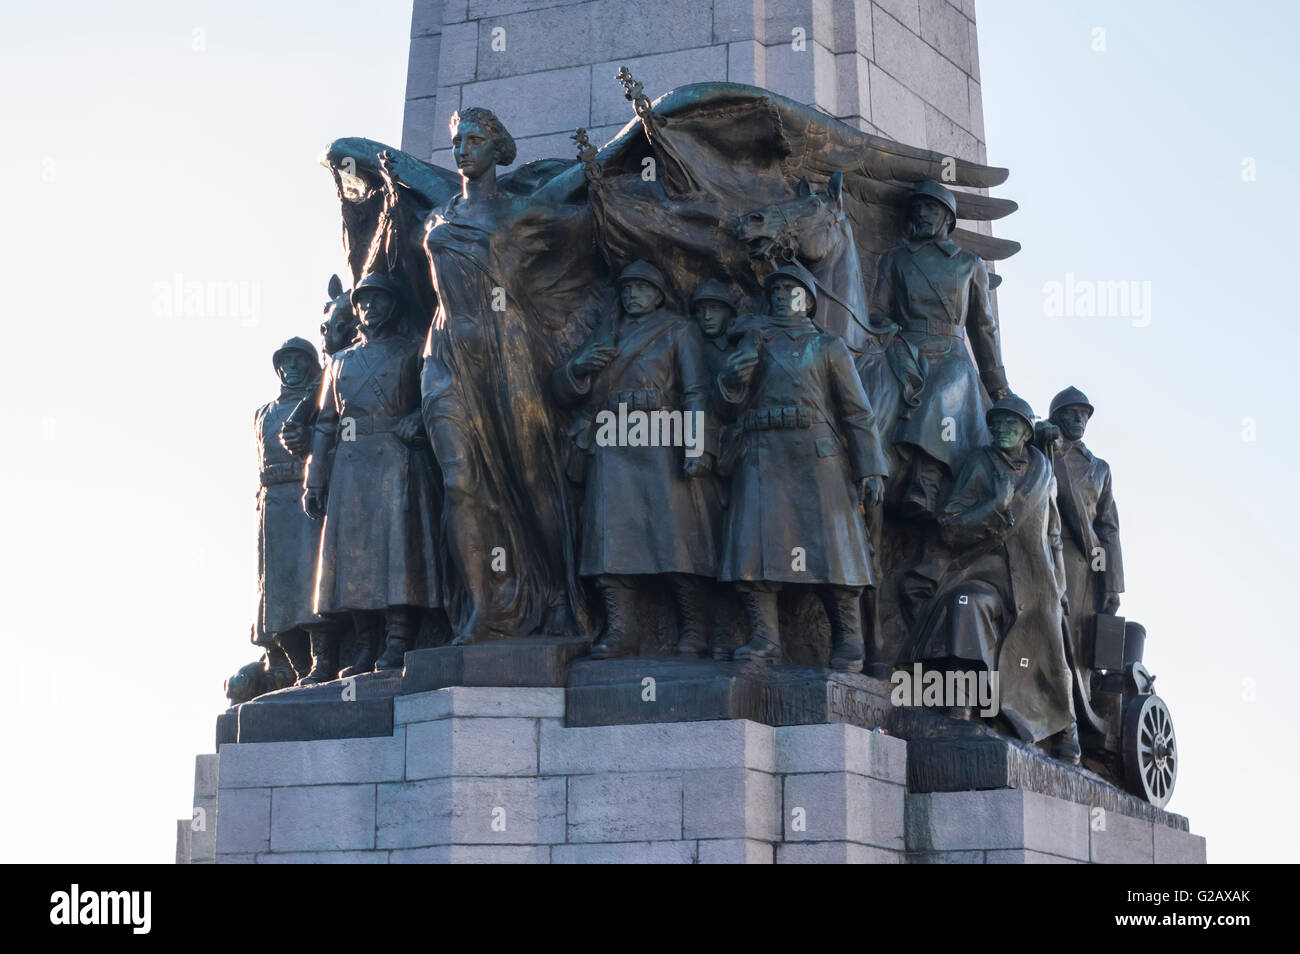 Allegorische Figuren der Gedenkstätte der belgische Infanterie (Denkmal ein la Gloire de l'Infanterie Belge), Brüssel, Belgien. Stockfoto